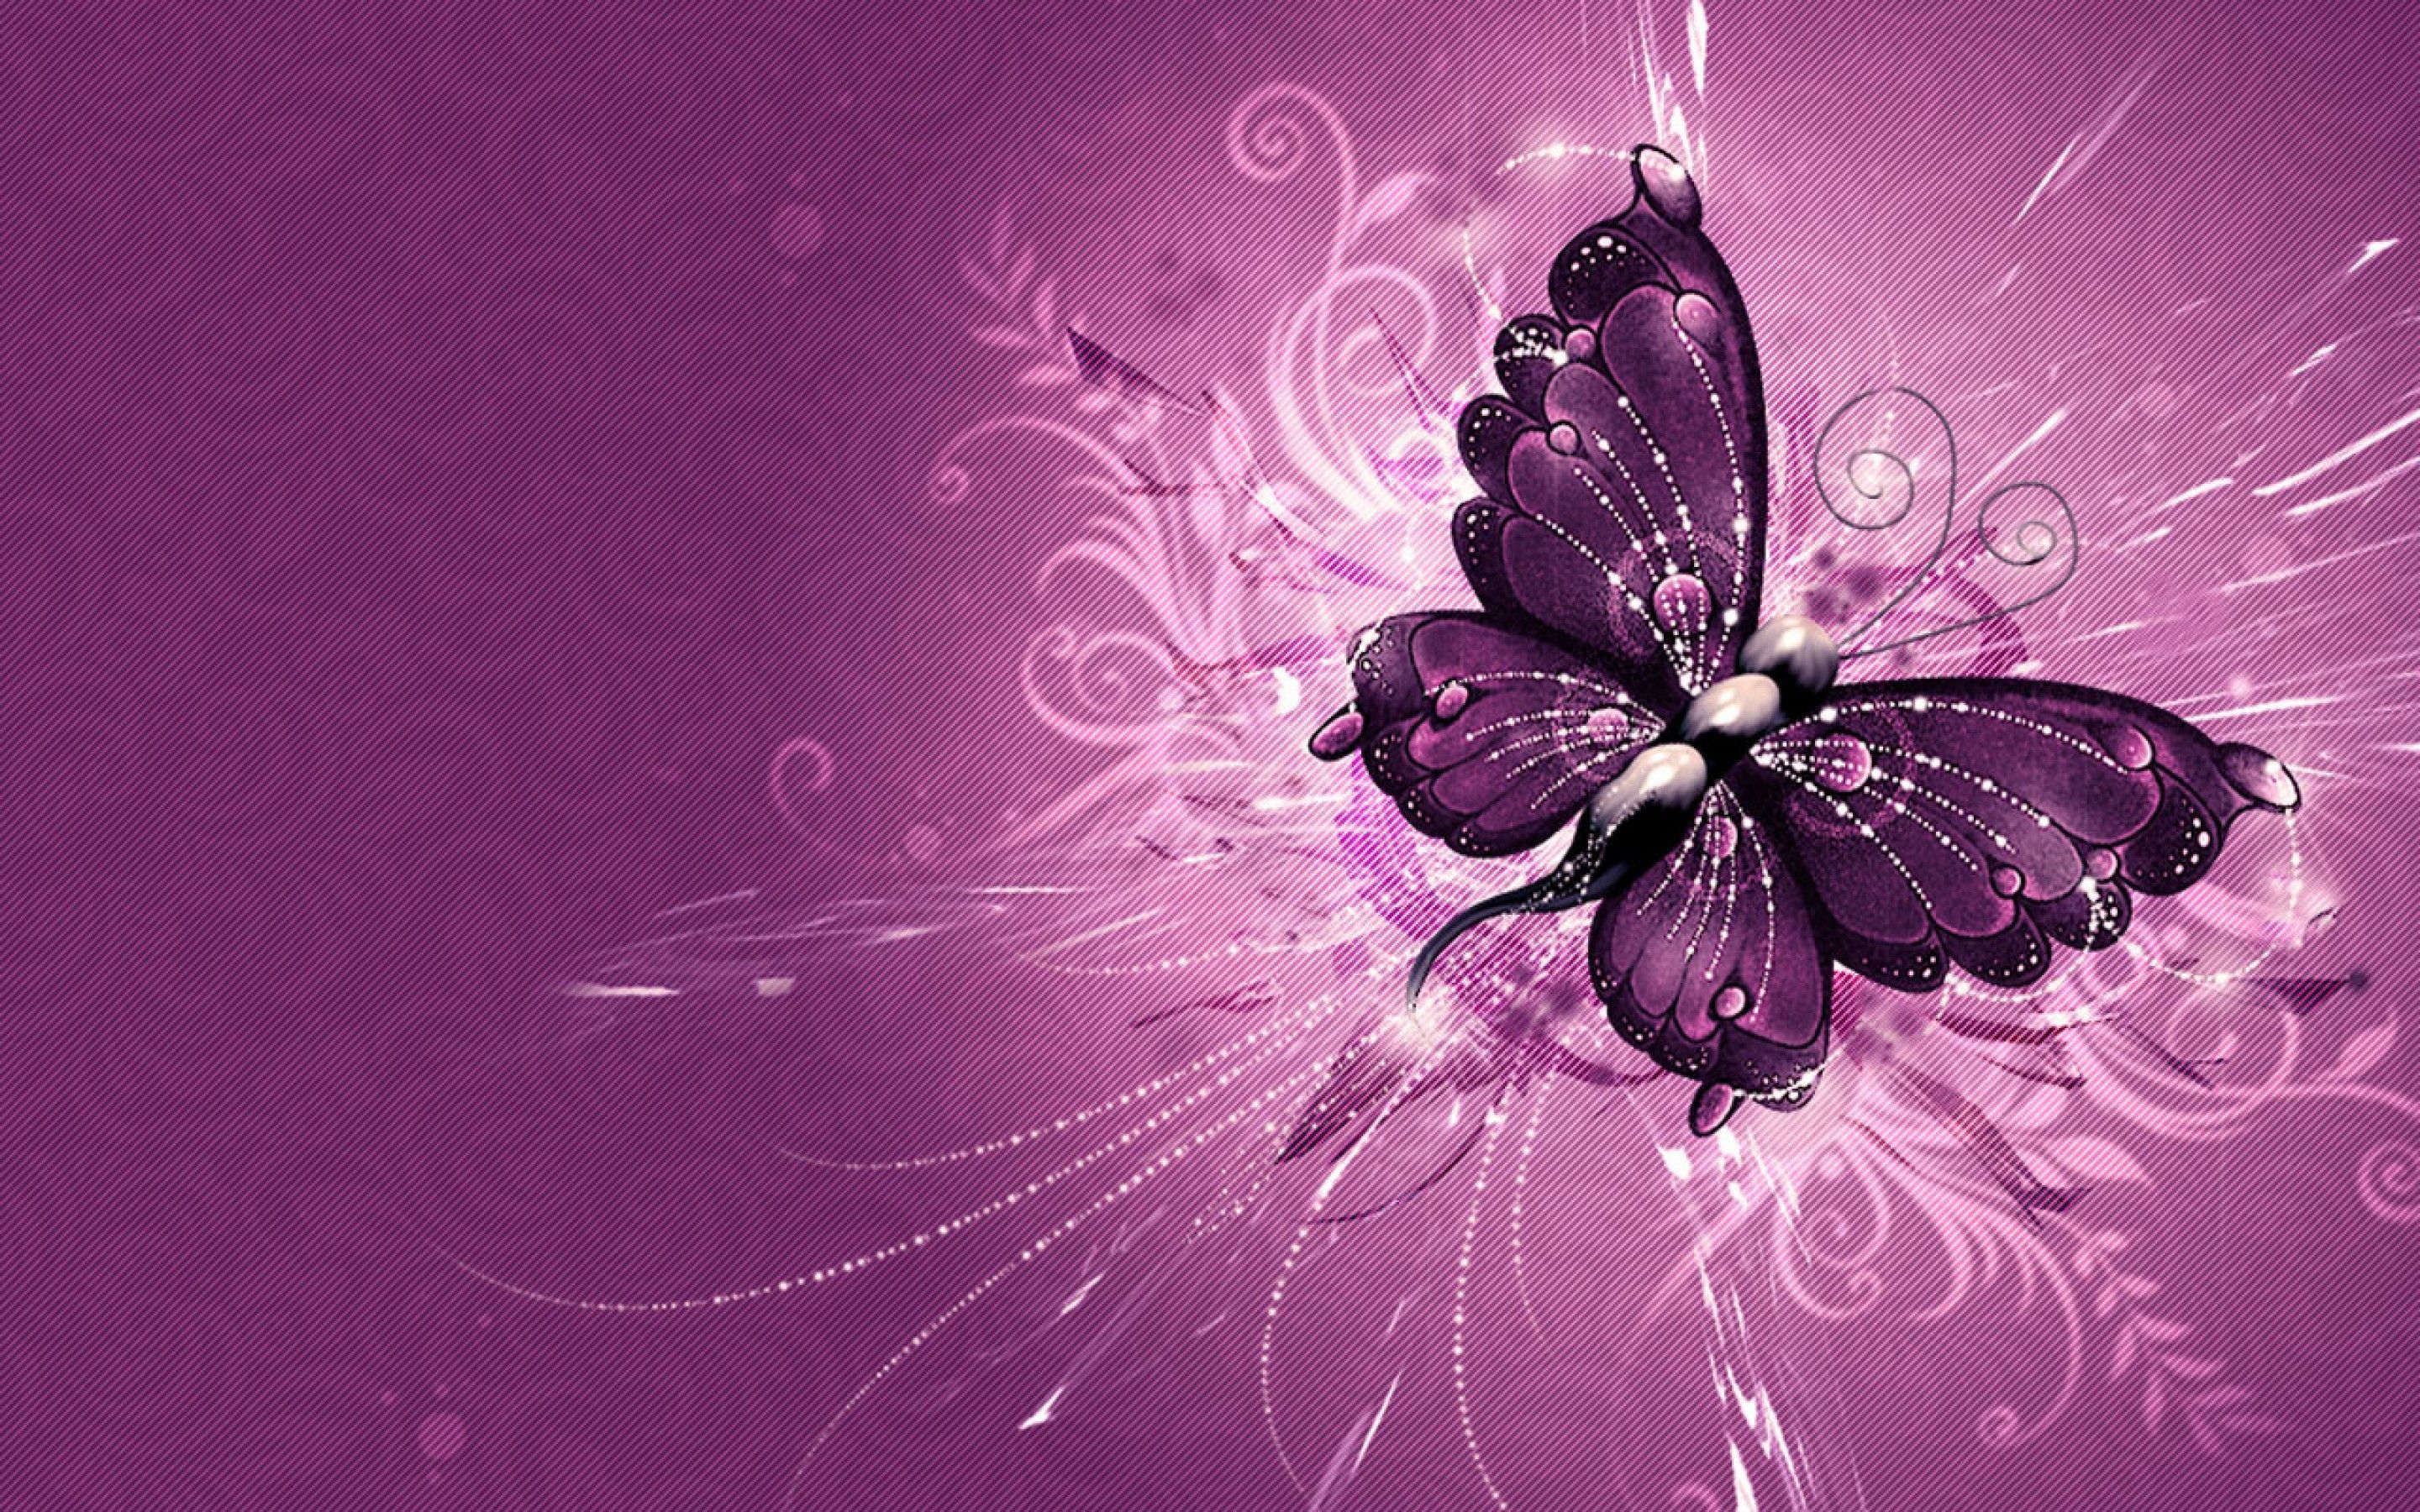 Butterfly desktop wallpaper pink aesthetic  Free Photo  rawpixel